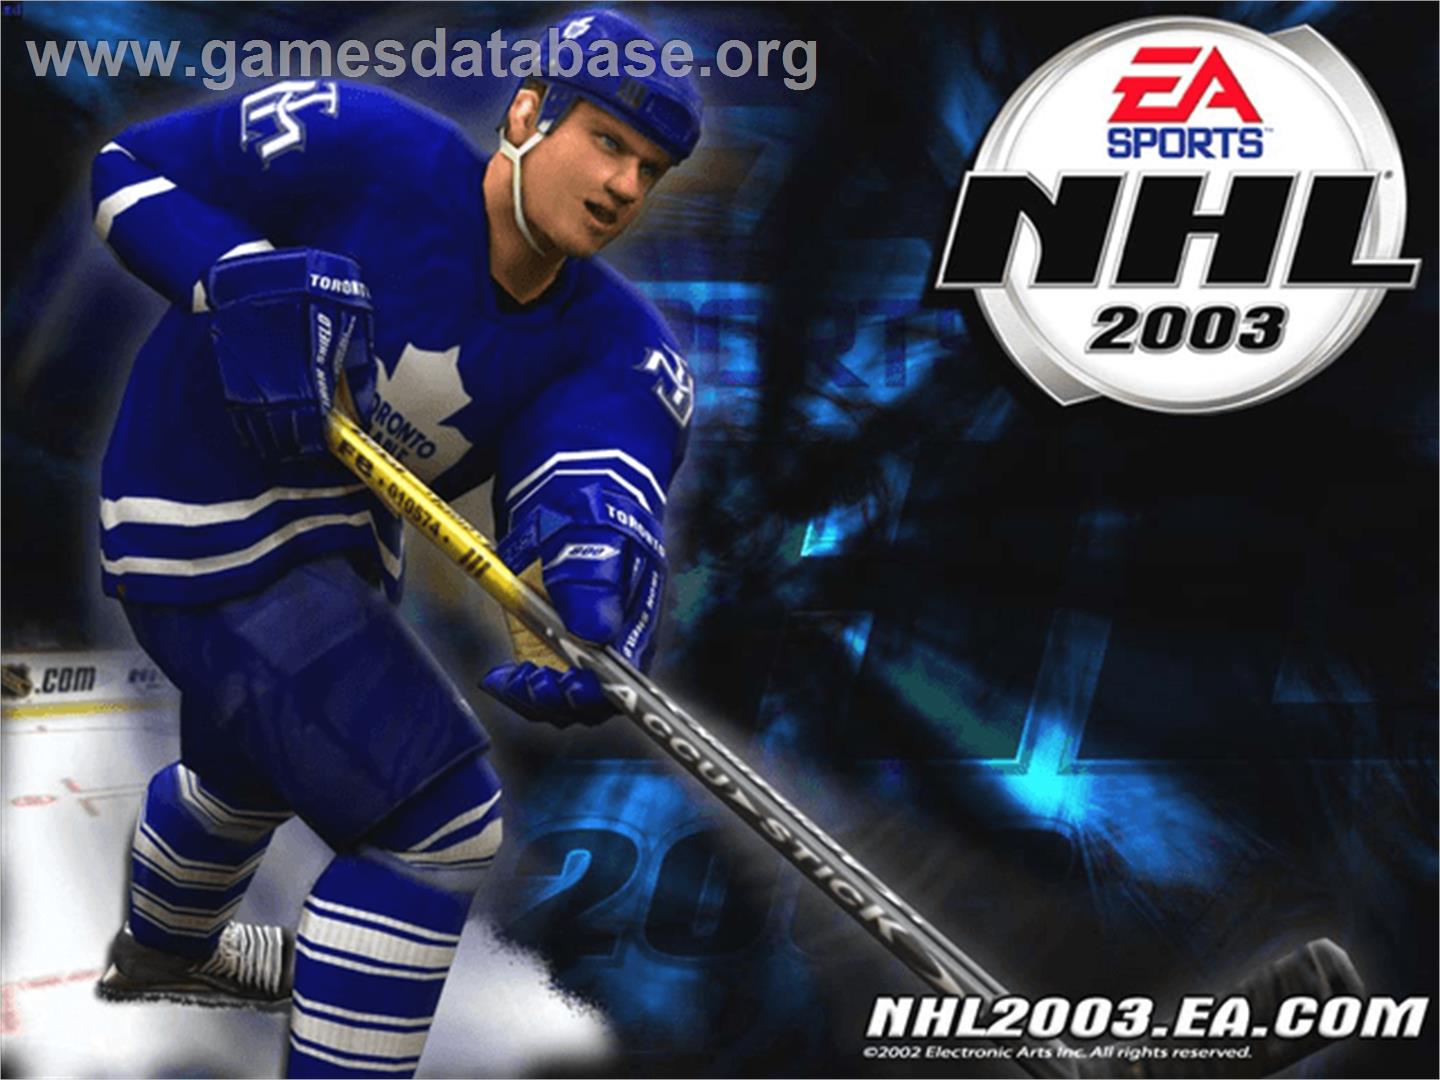 NHL 2003 - Microsoft Xbox - Artwork - Title Screen